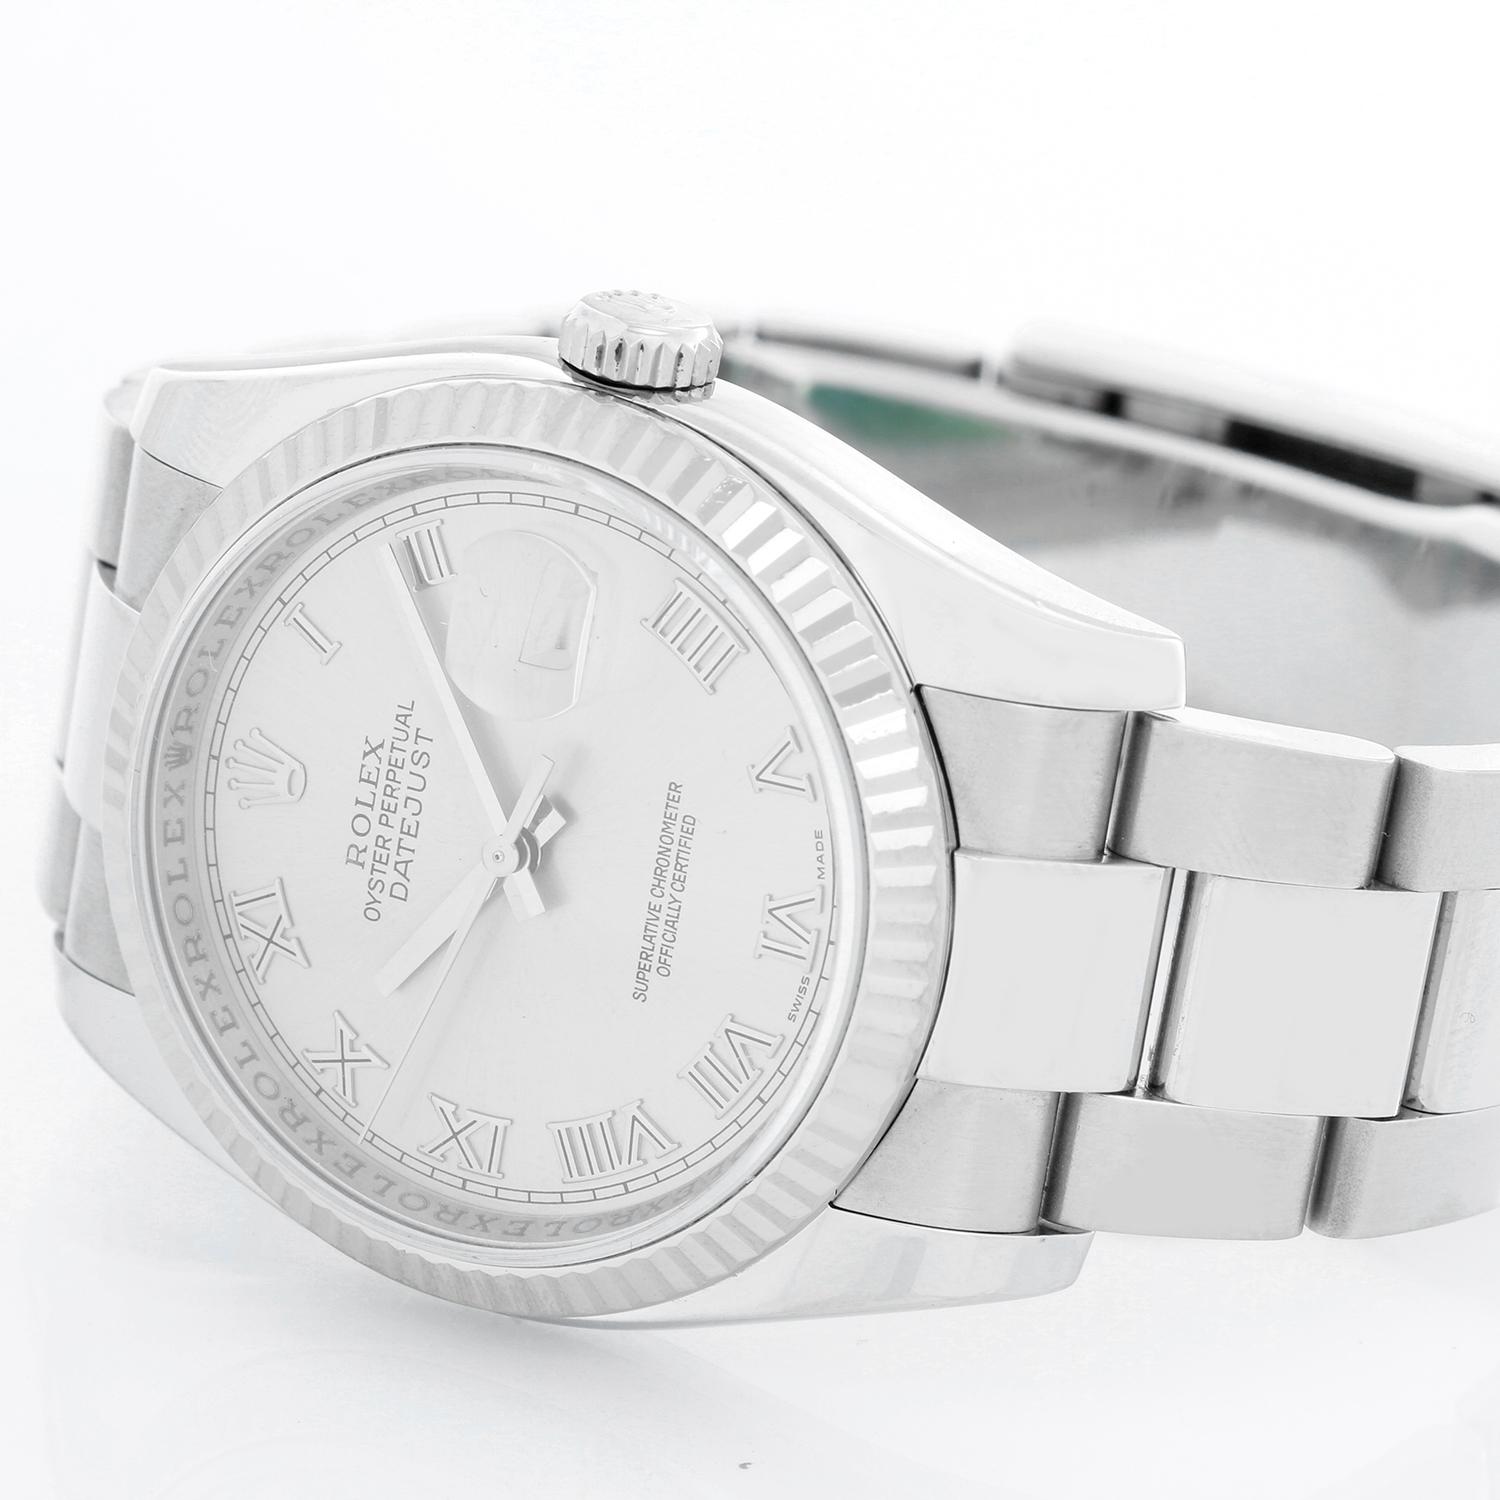 Rolex Datejust Men's Stainless Steel Watch 116234 1